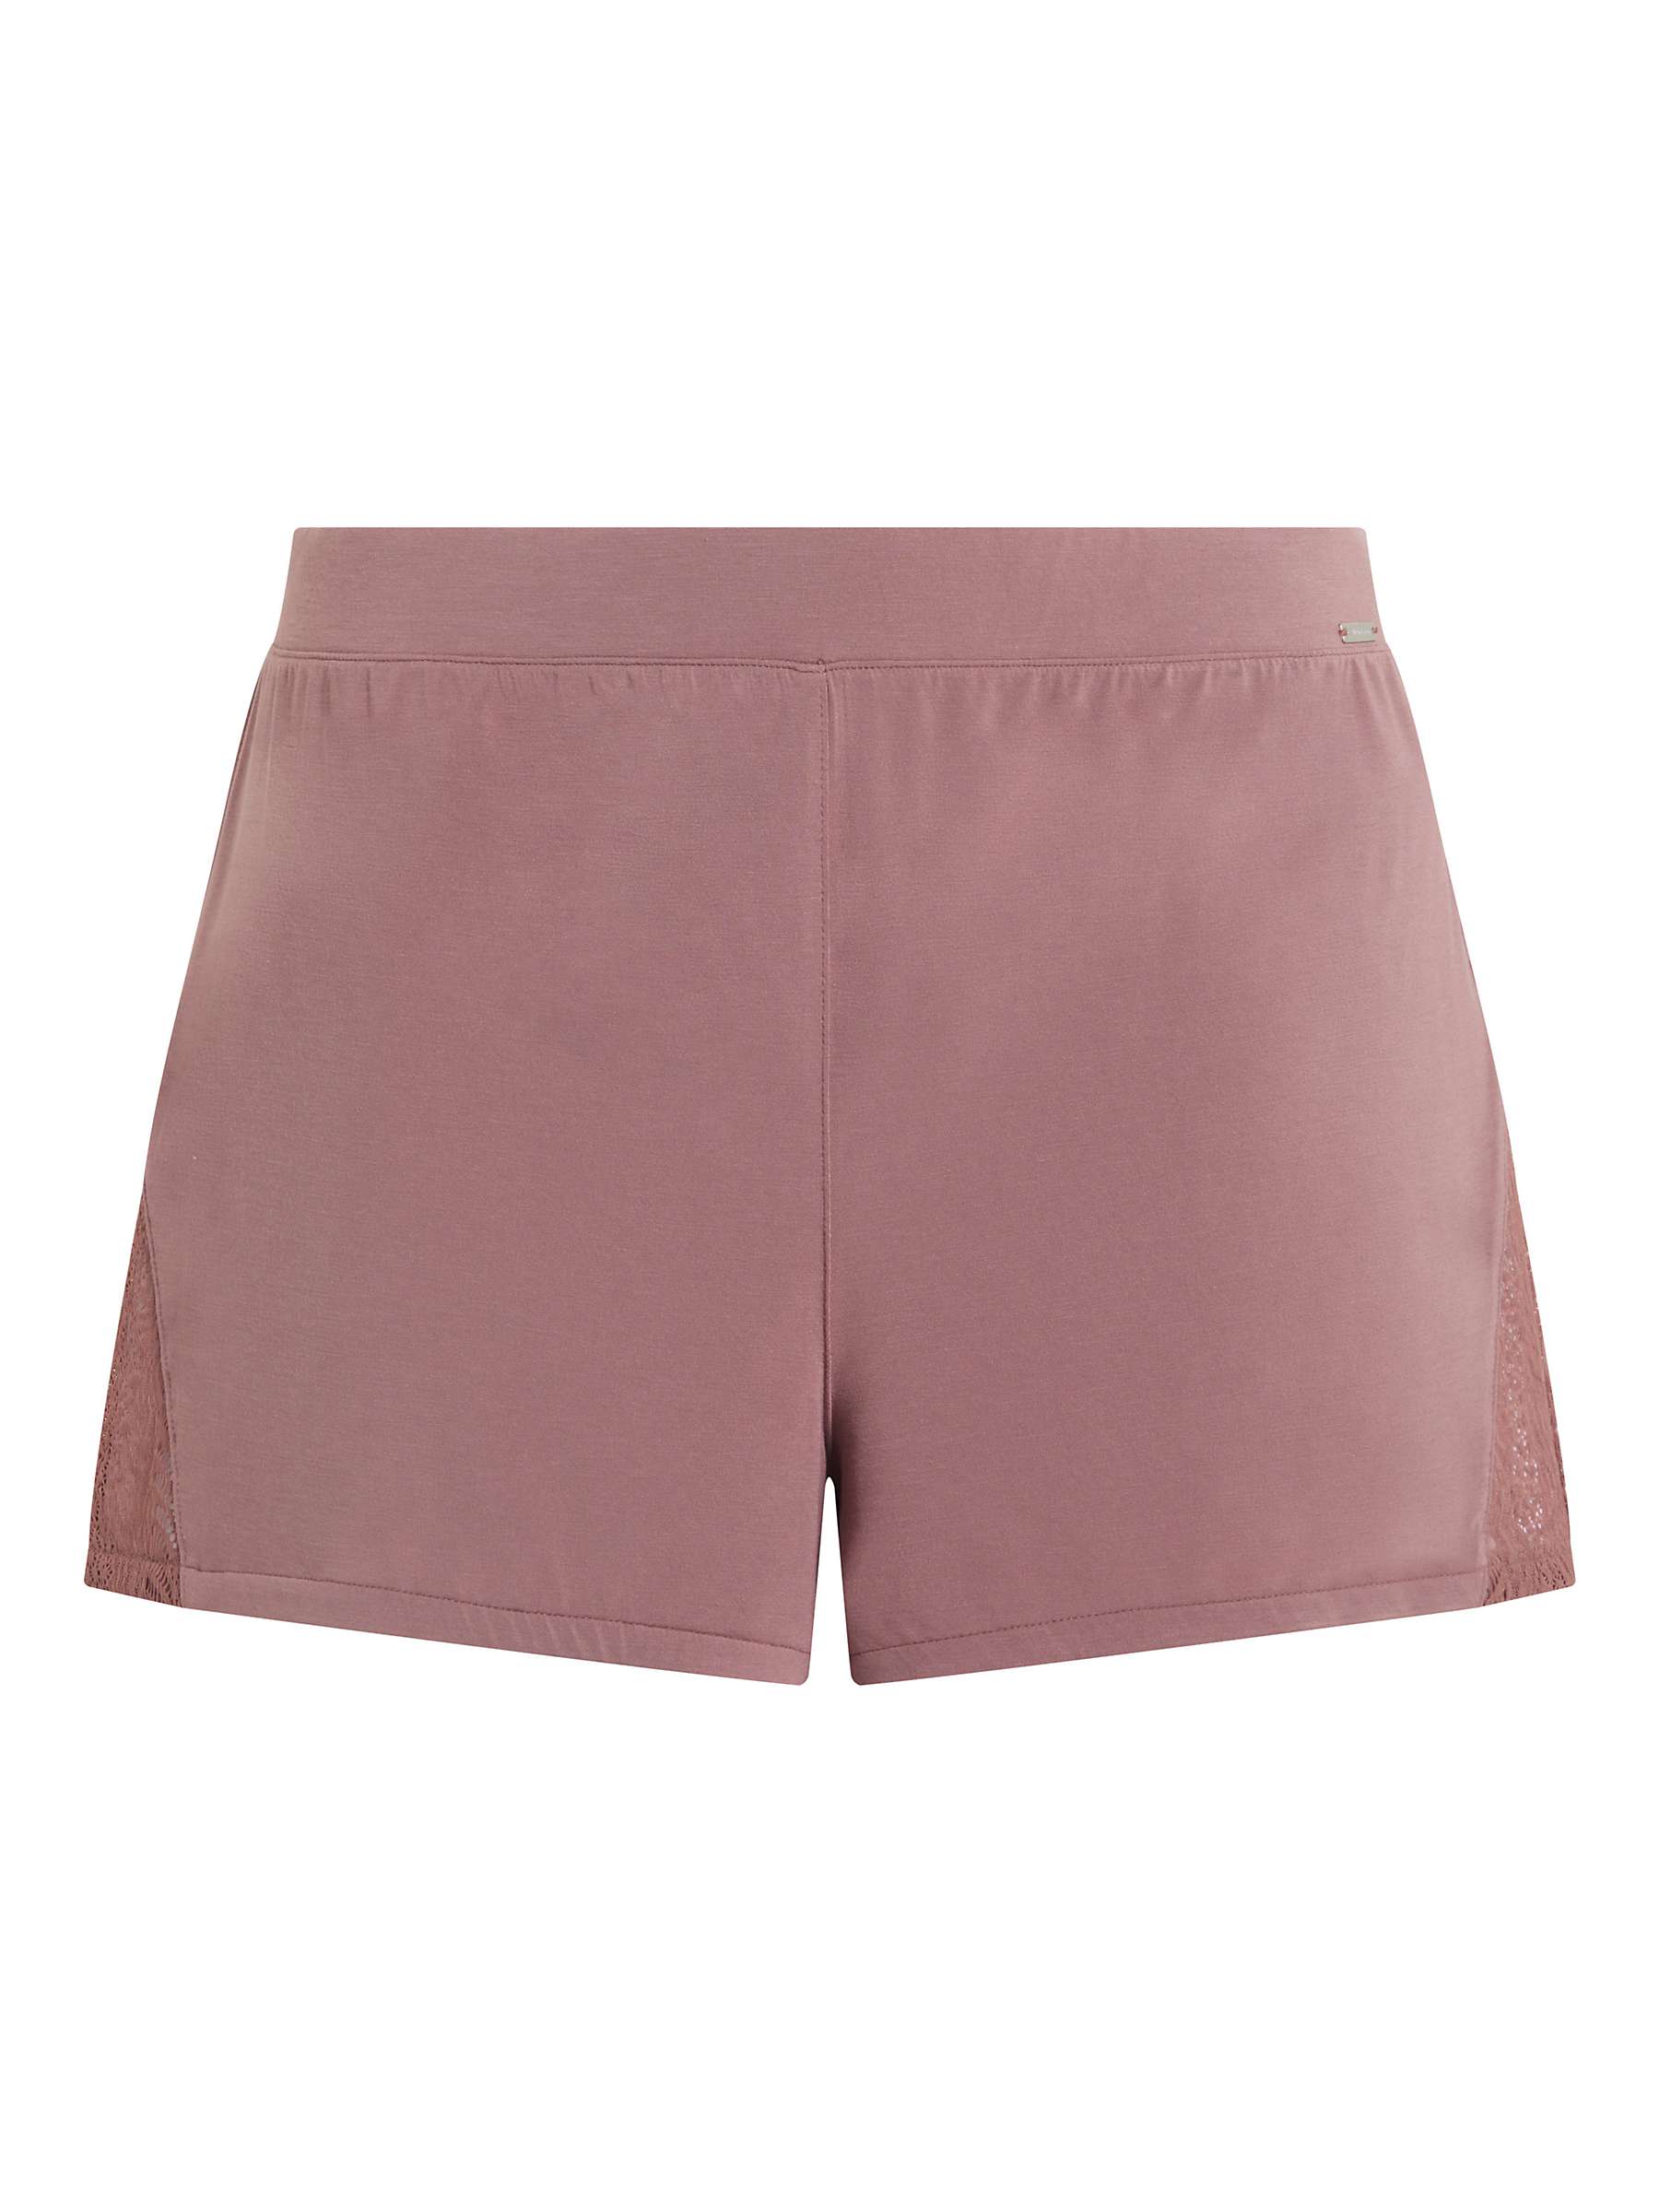 Buy Calvin Klein Lounge Pyjama Shorts Online at johnlewis.com